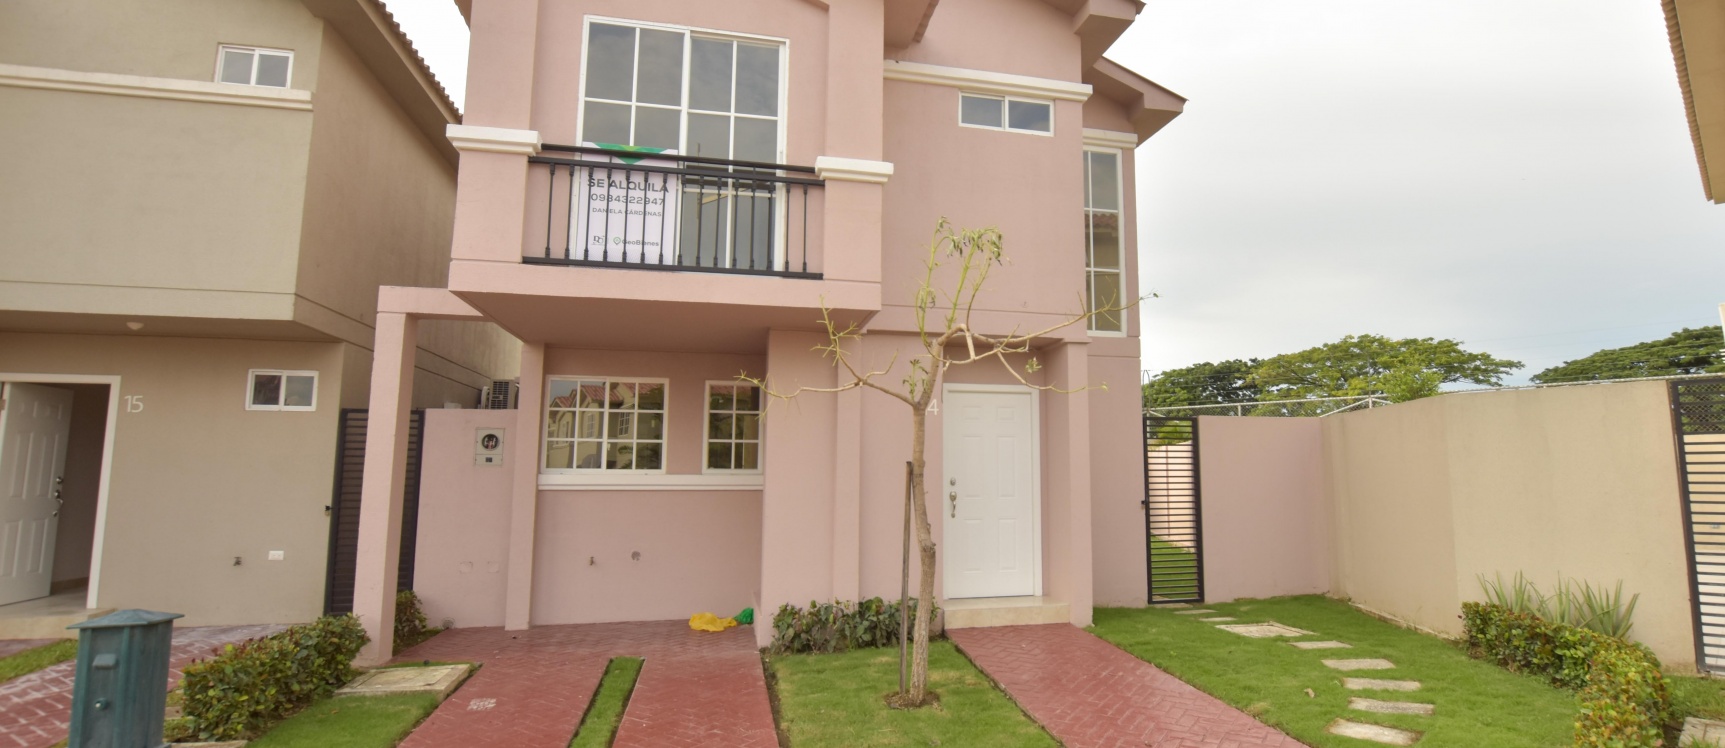 GeoBienes - Casa en alquiler ubicada en Casa Laguna Etapa Paradisa - Plusvalia Guayaquil Casas de venta y alquiler Inmobiliaria Ecuador